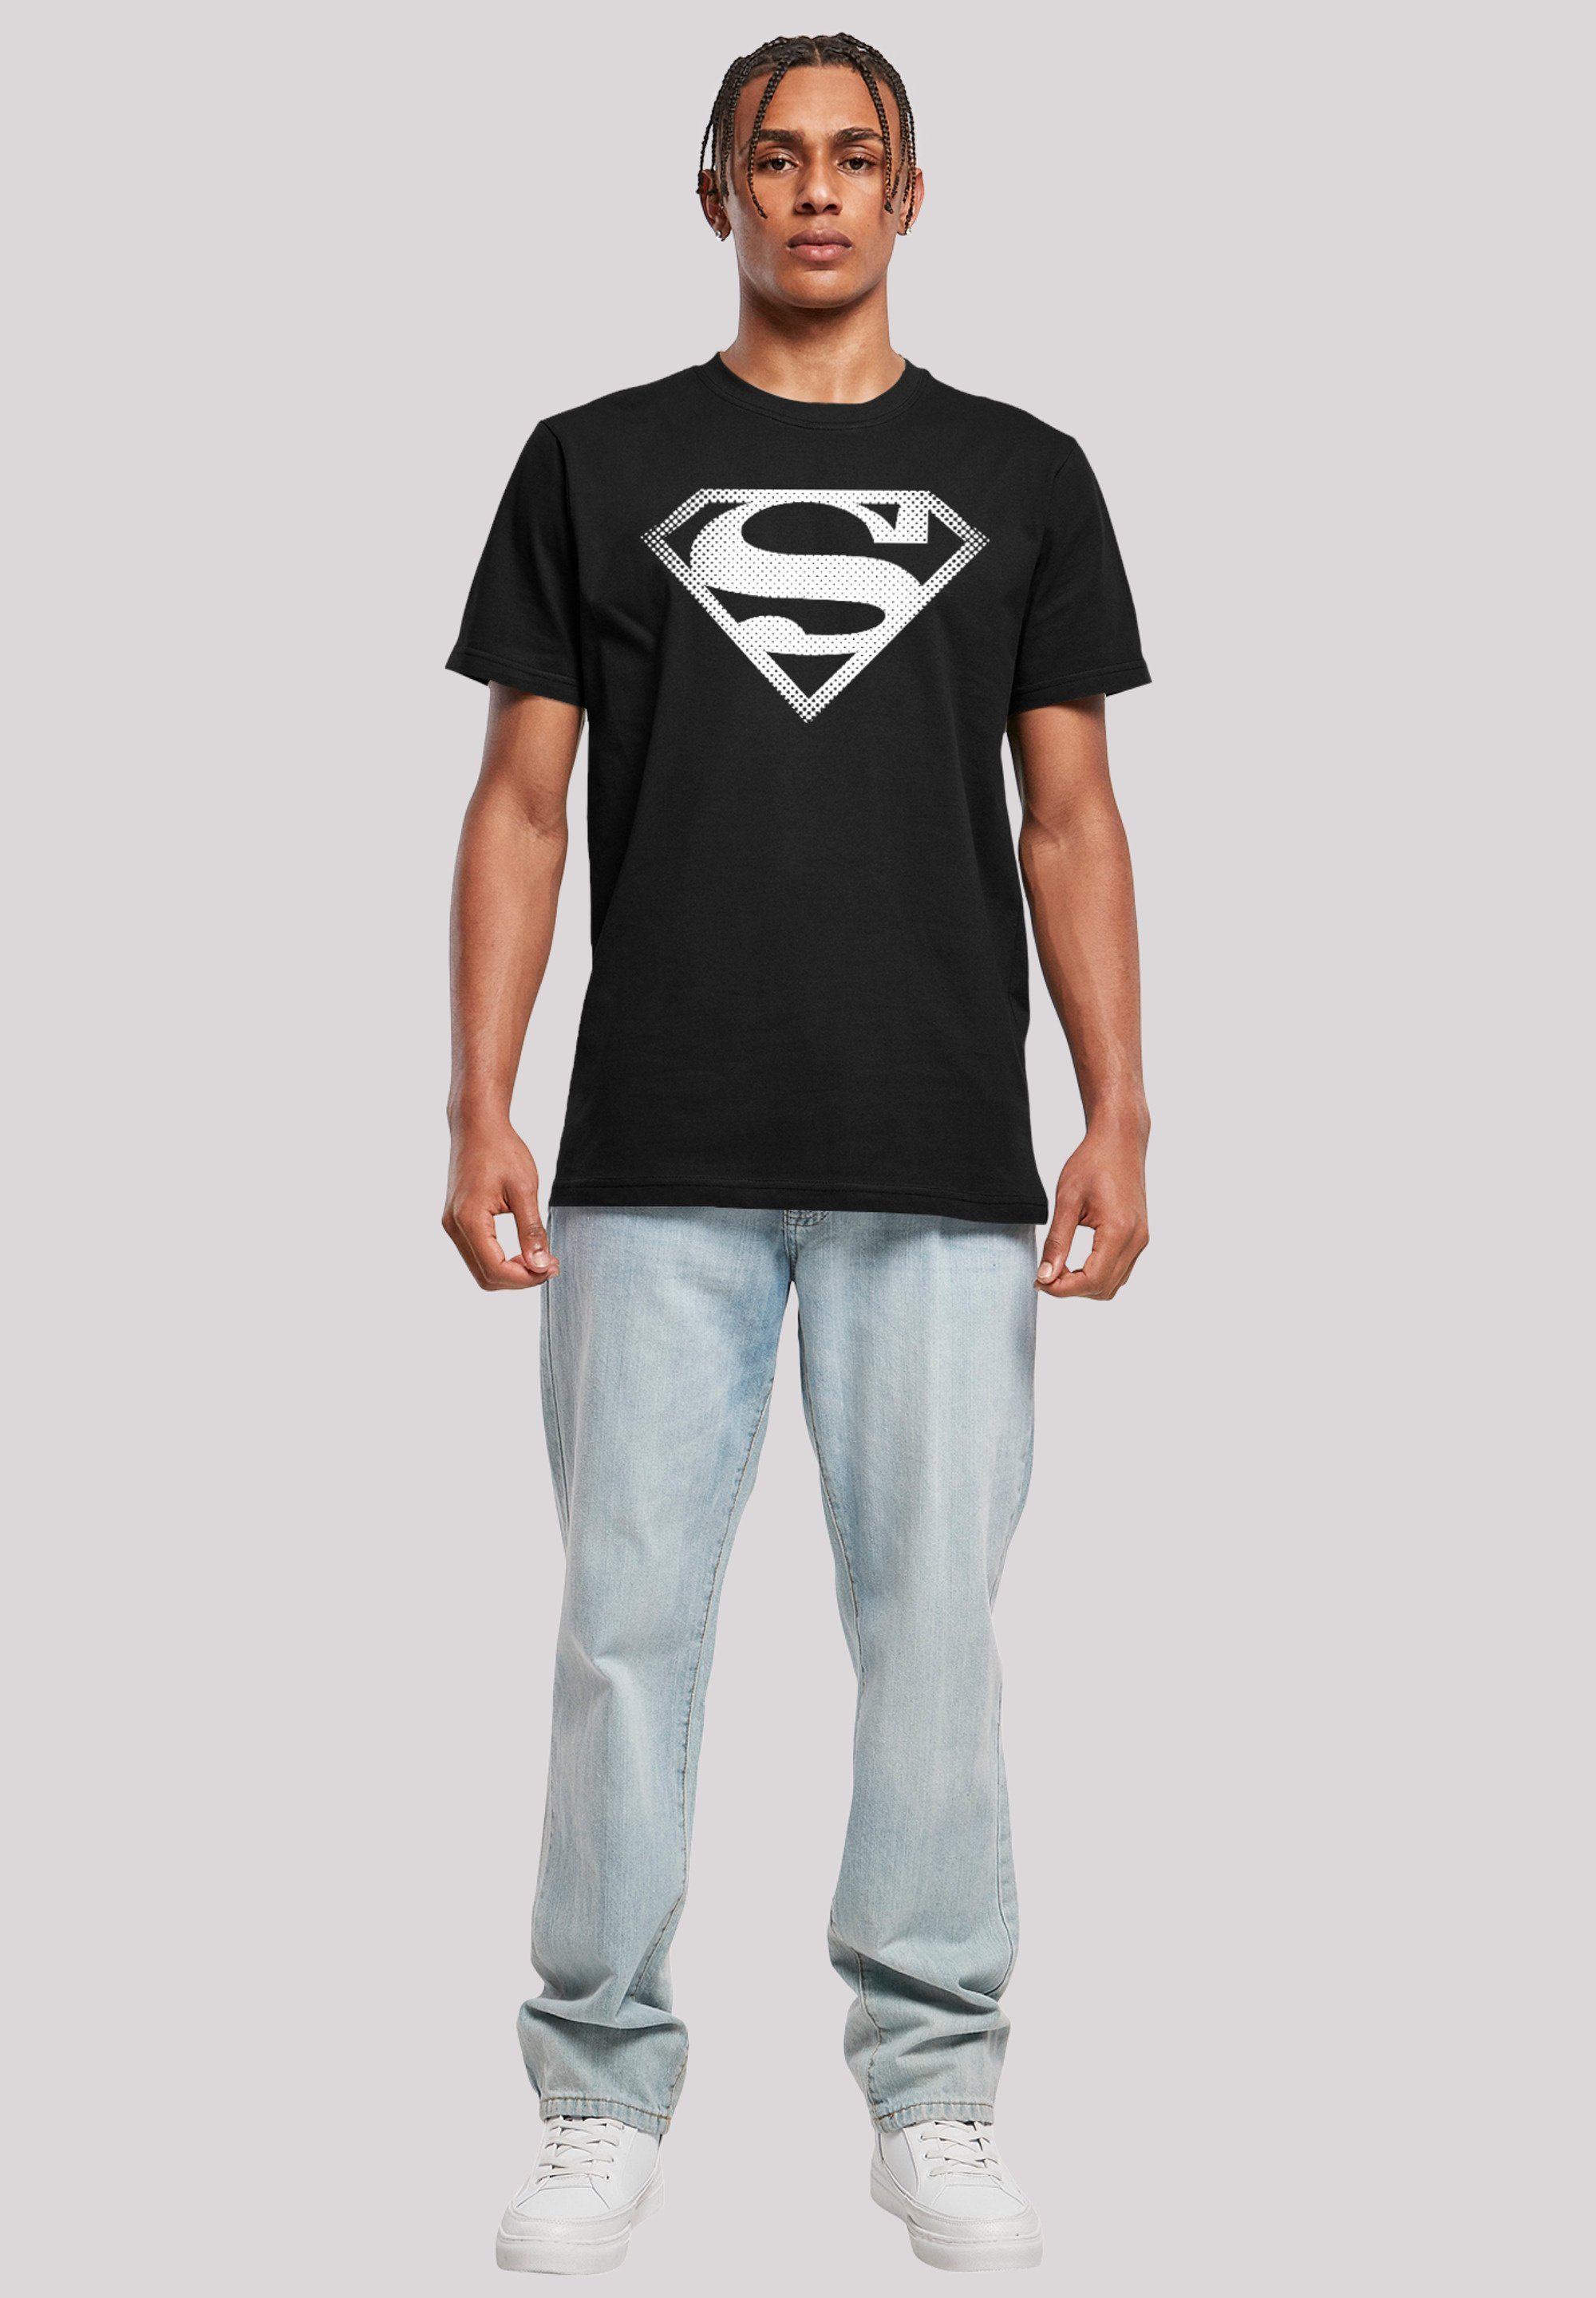 Spot T-Shirt Superman Logo Herren,Premium Comics DC F4NT4STIC Merch,Regular-Fit,Basic,Bedruckt